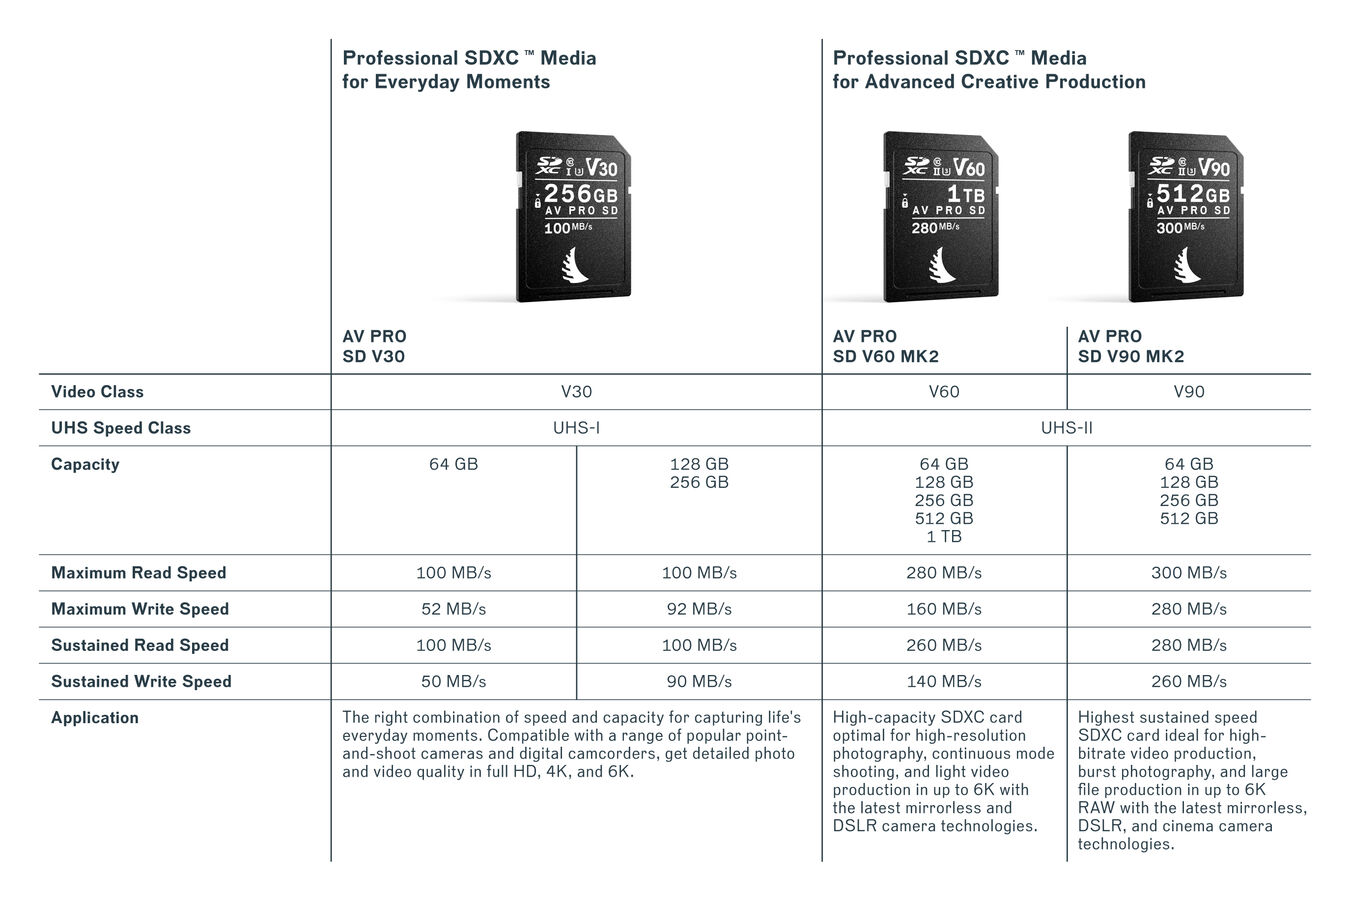 Karta pamięci Angelbird SDXC 64GB AV Pro (100MB/s) V30 UHS-I U3 - WYPRZEDAŻ